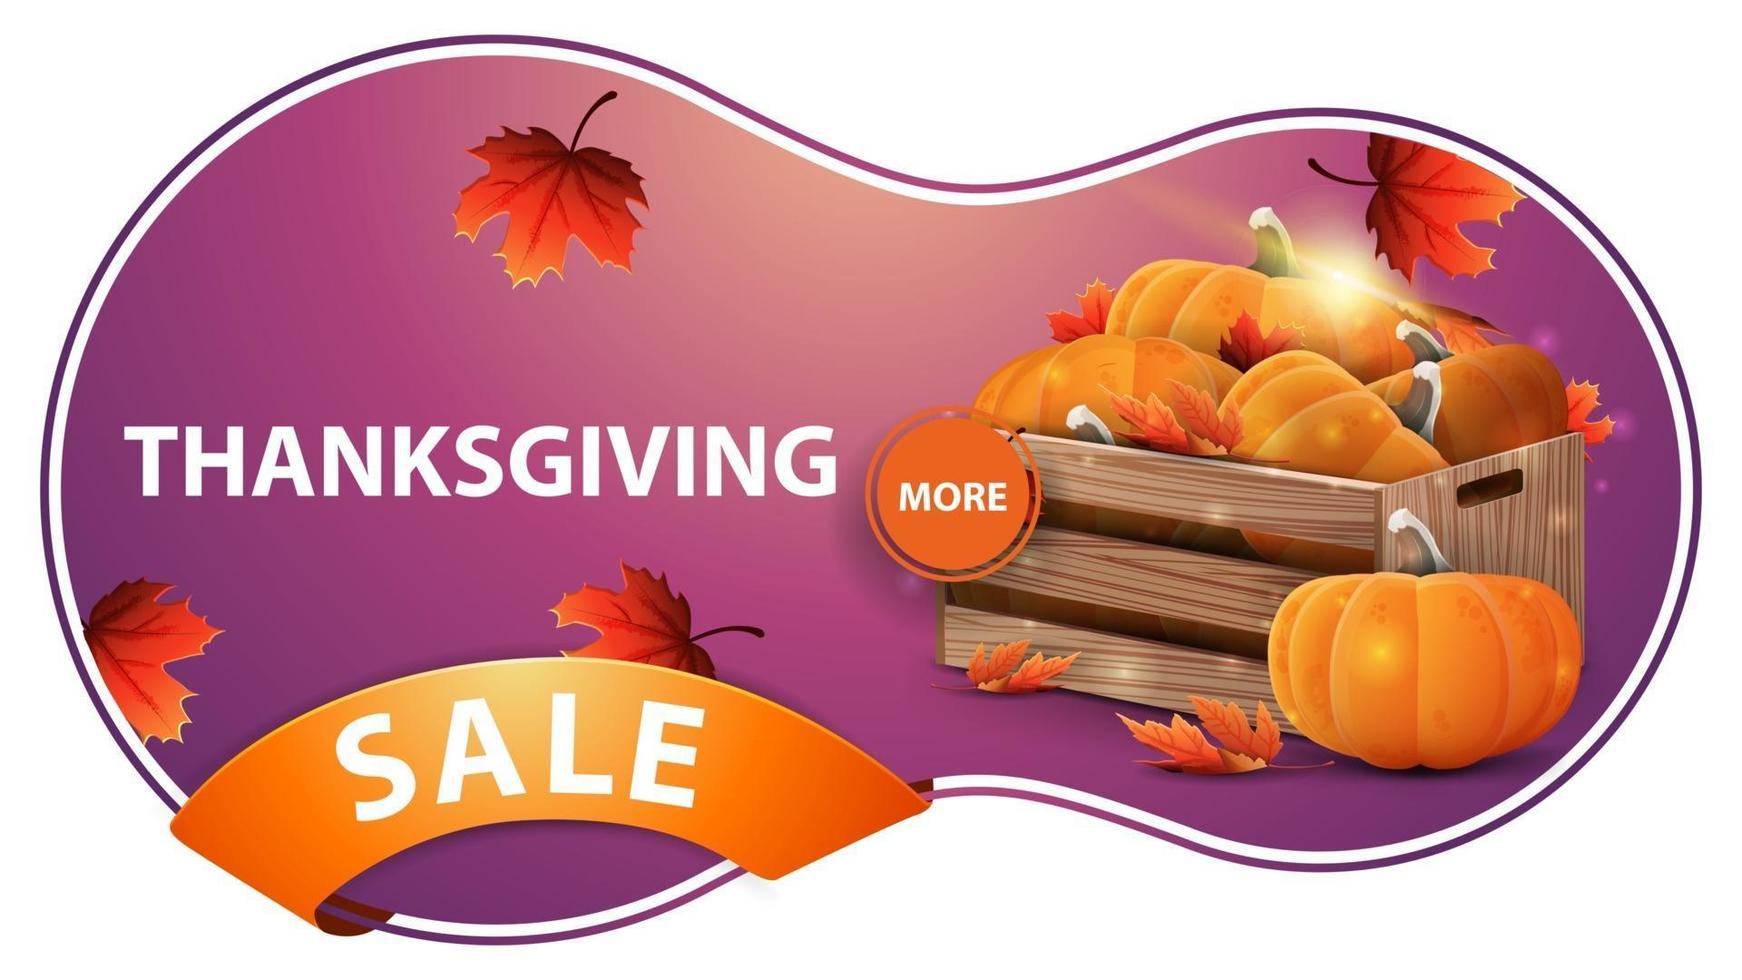 Thanksgiving-Verkauf, rosa Rabatt-Webbanner mit Holzkisten mit reifen Kürbissen und Herbstblättern vektor